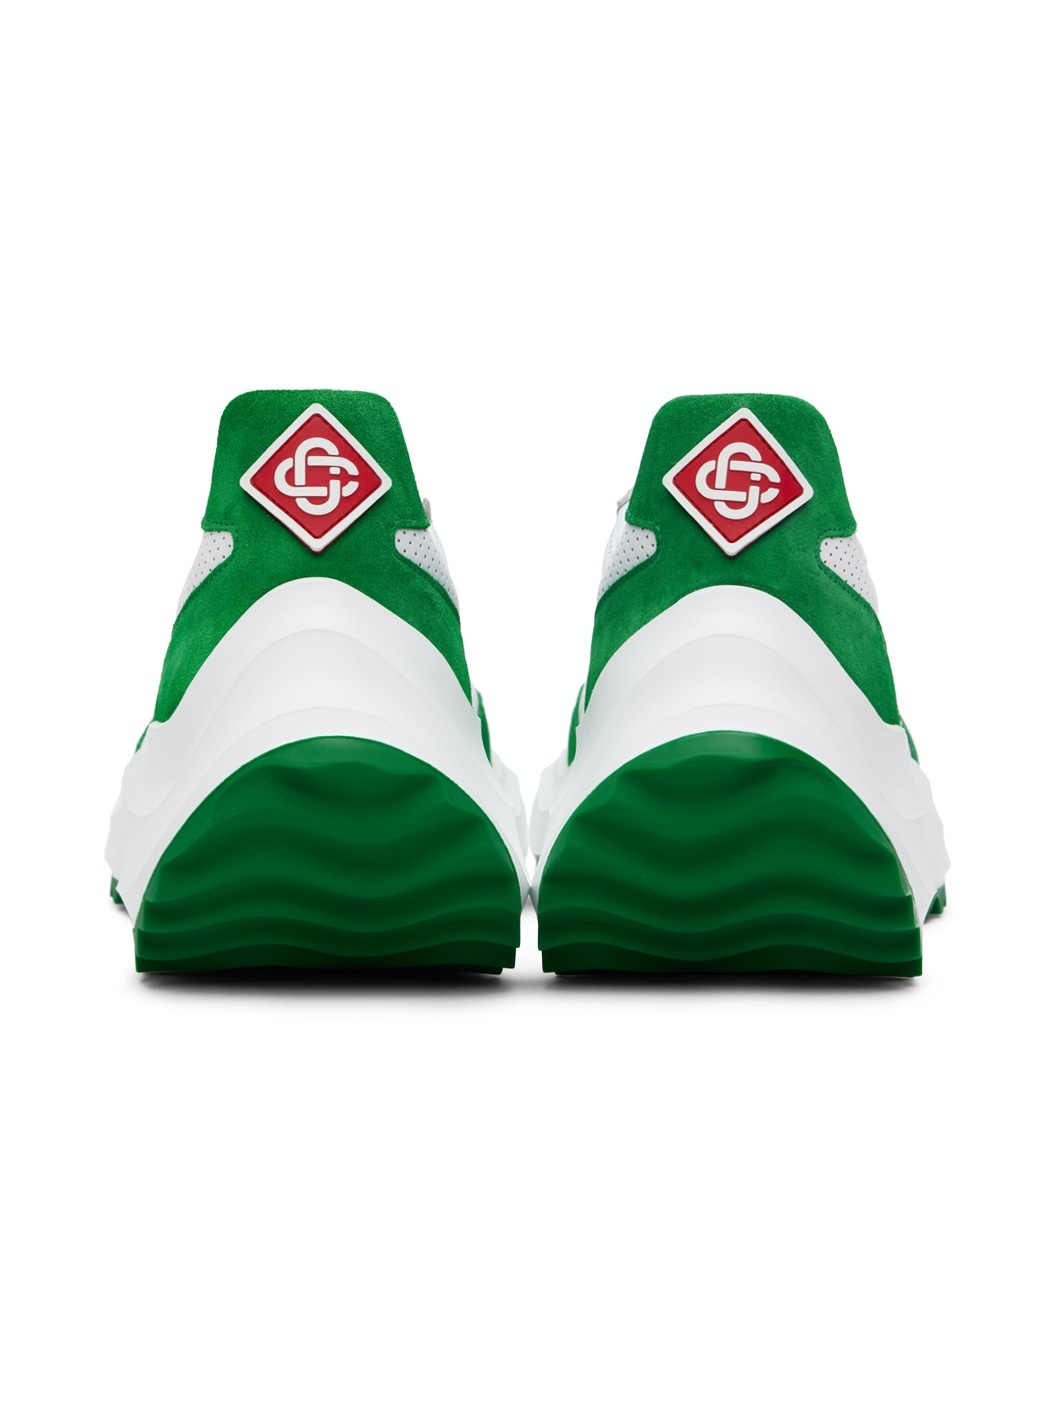 Green & White Atlantis Sneakers - 2